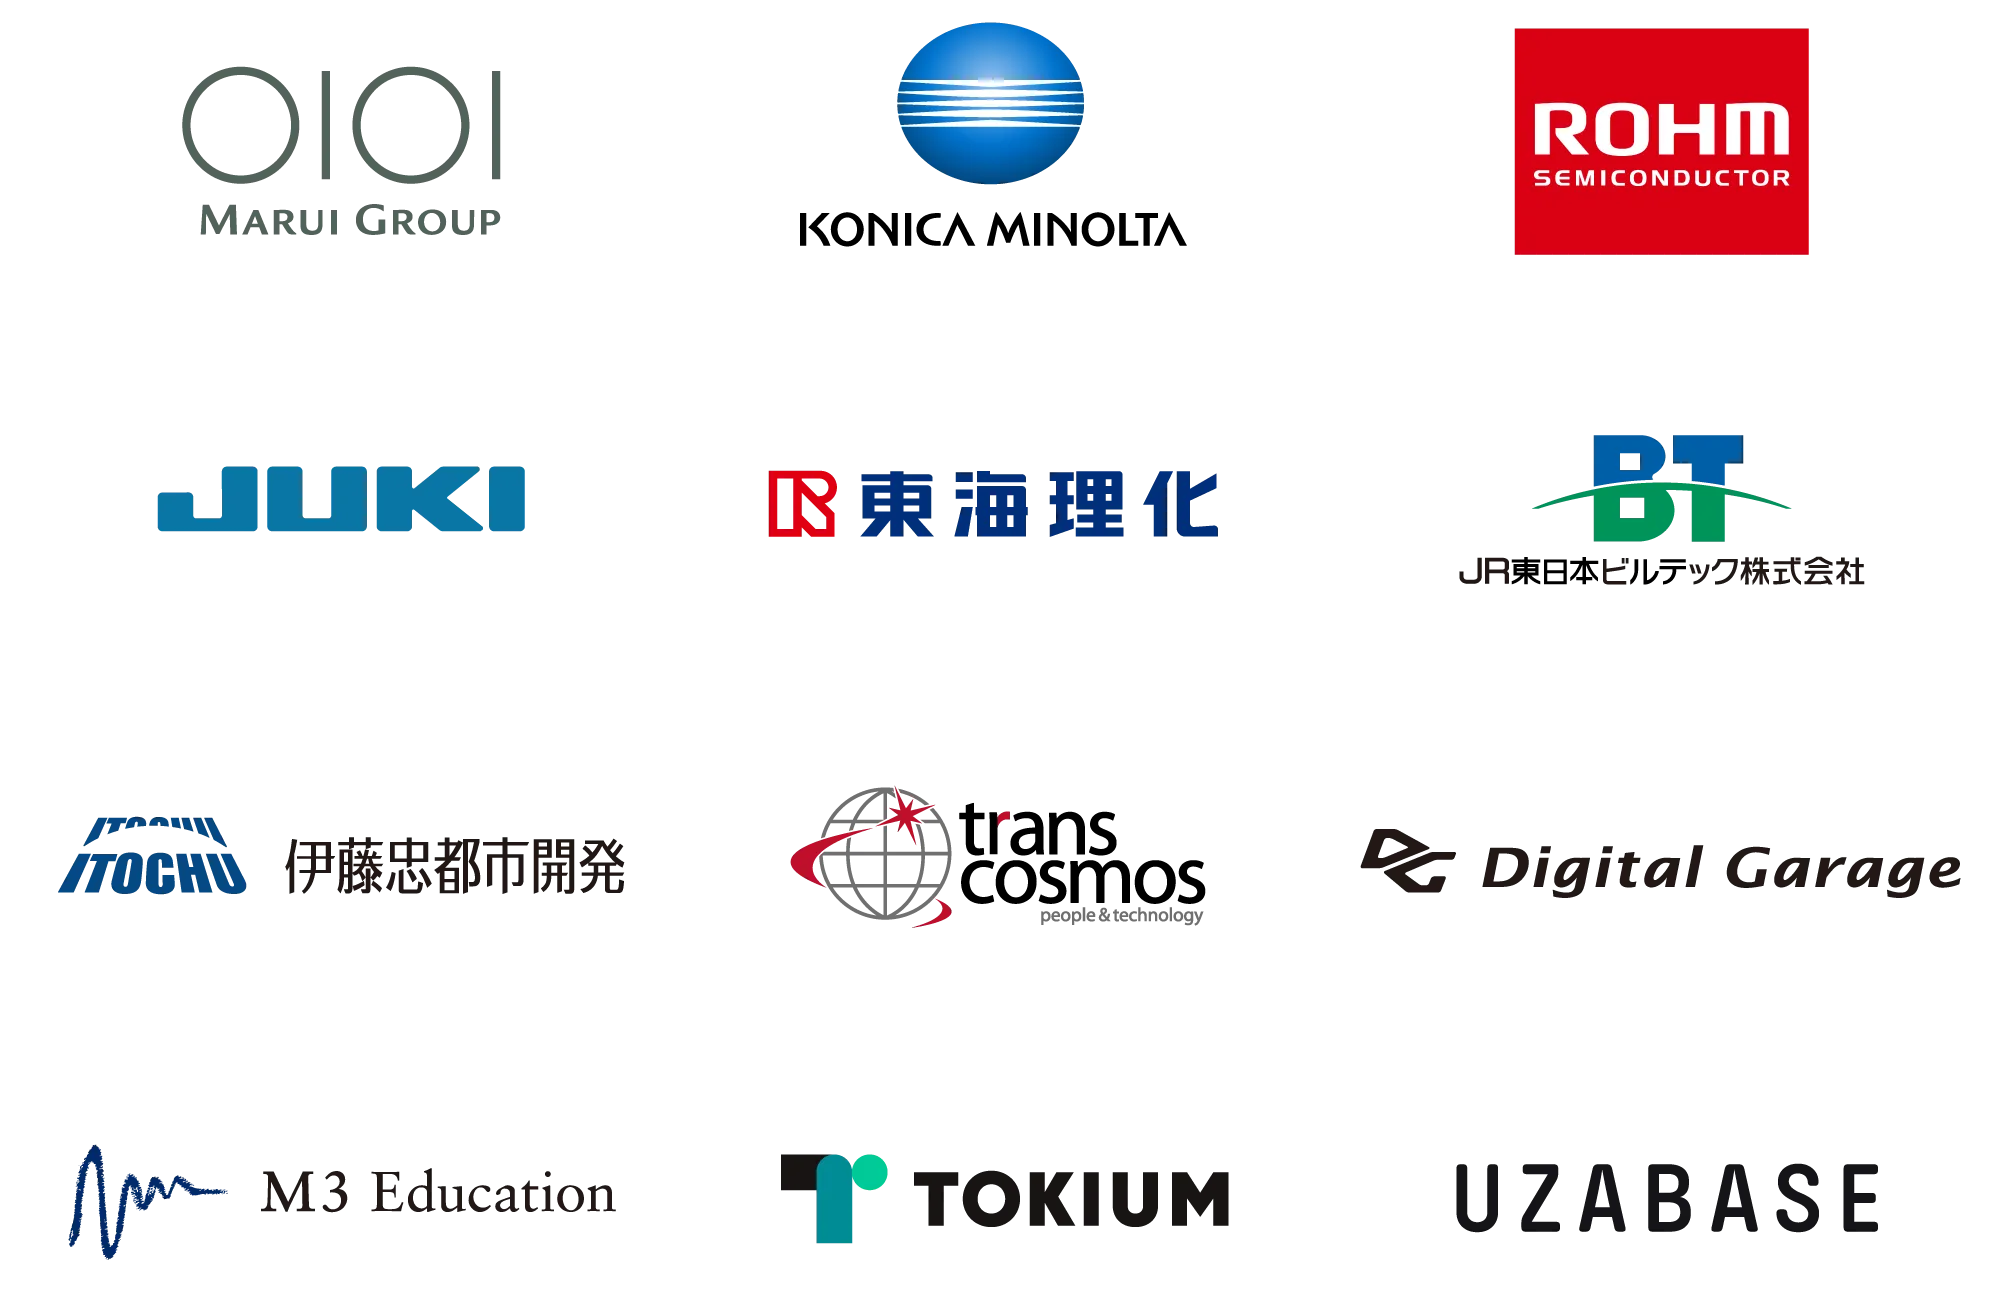 company-logos